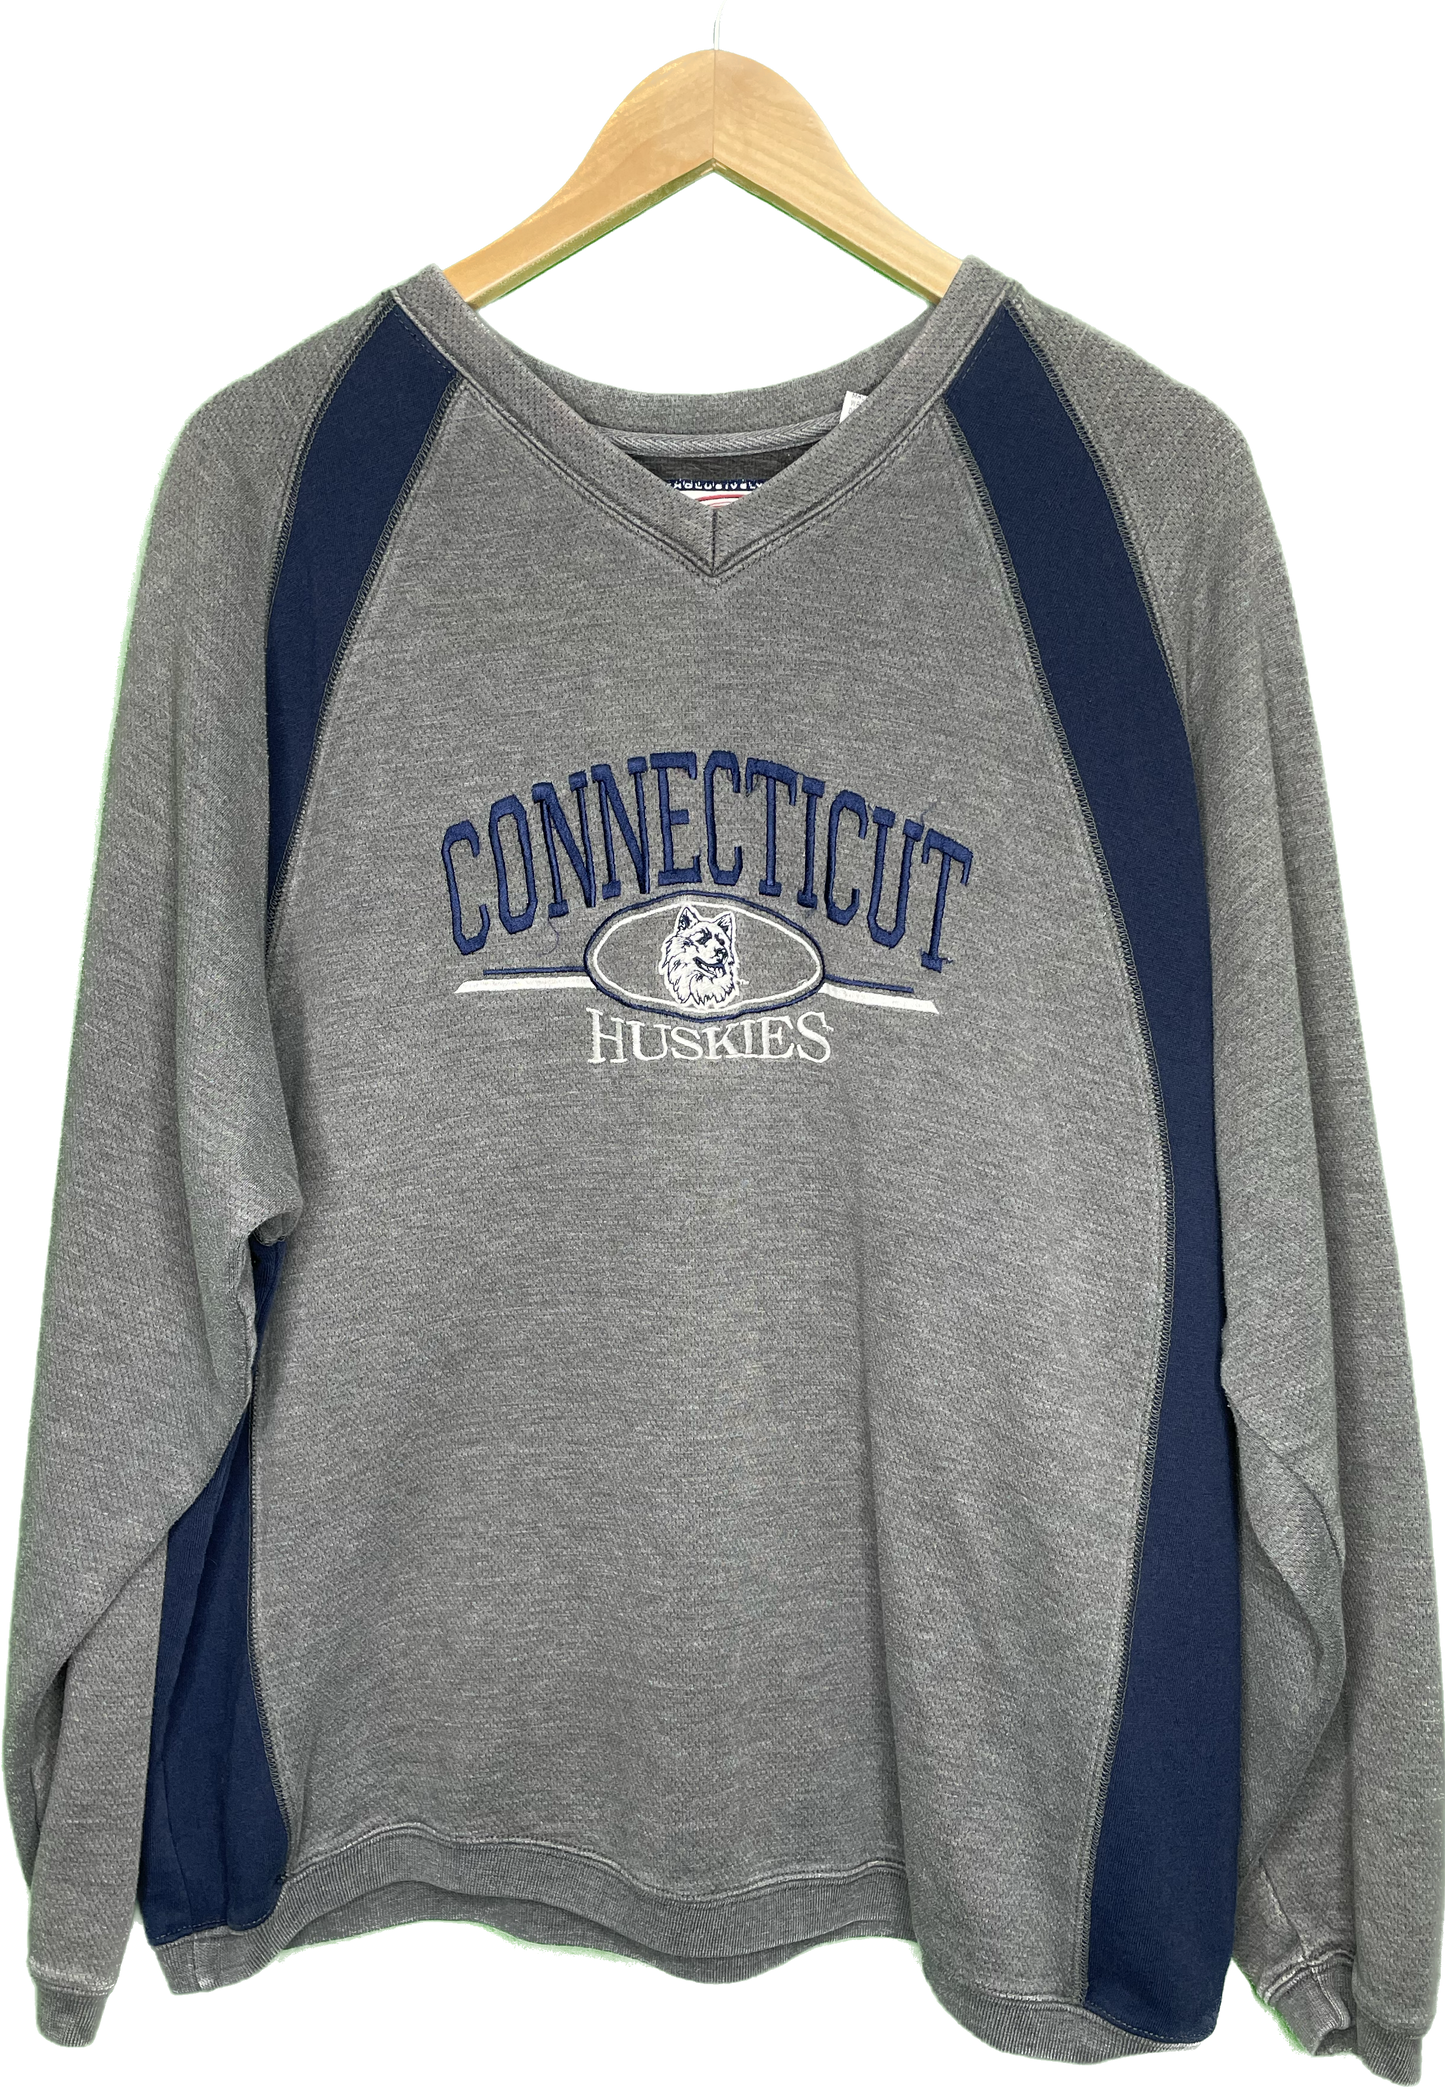 XL Connecticut Huskies School Pride Sweatshirt